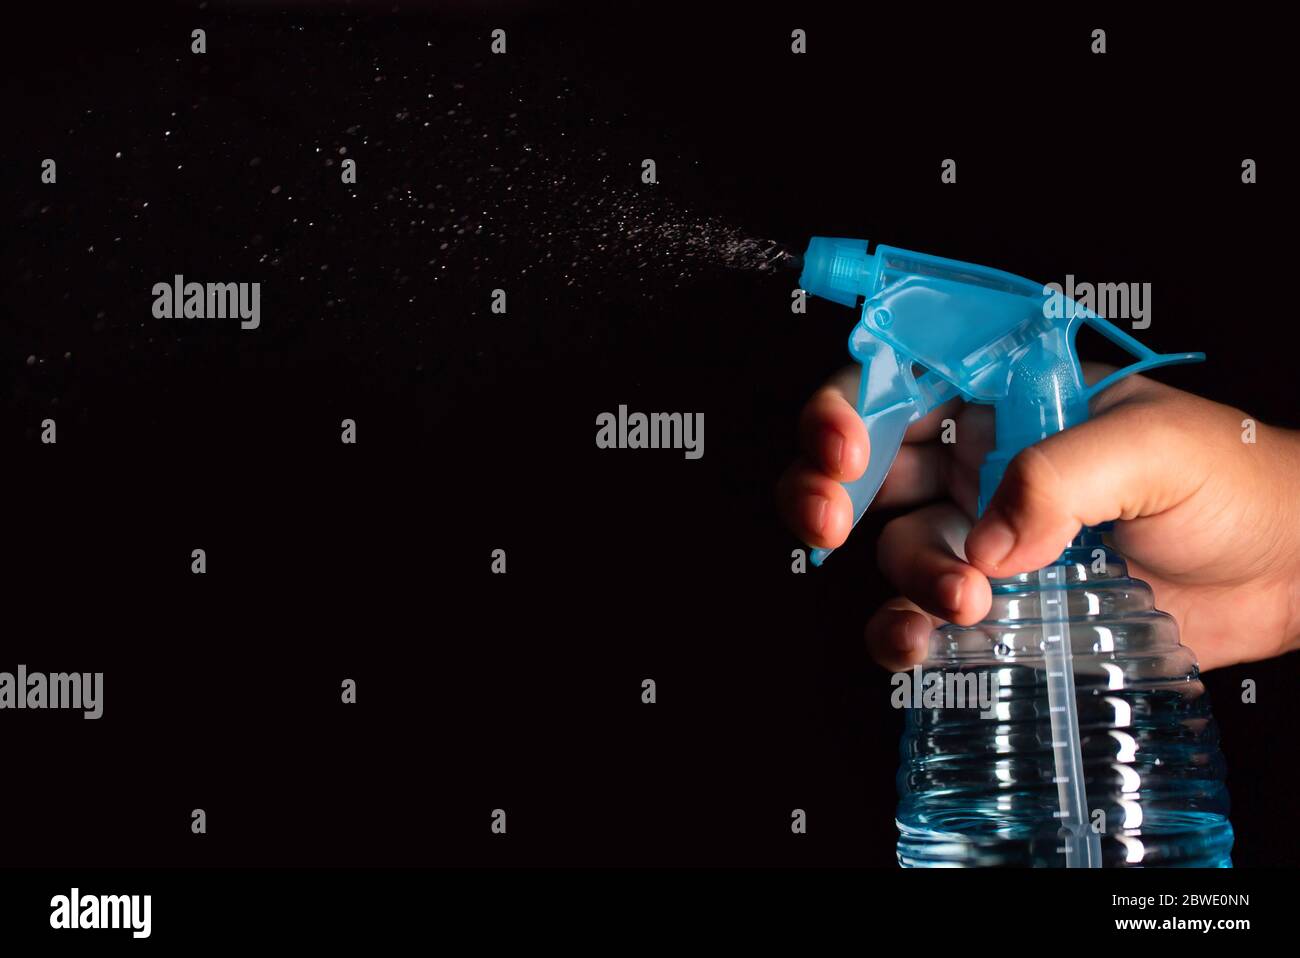 Une main de fille vaporisant un spray bleu avec un produit de nettoyage à fond noir Banque D'Images